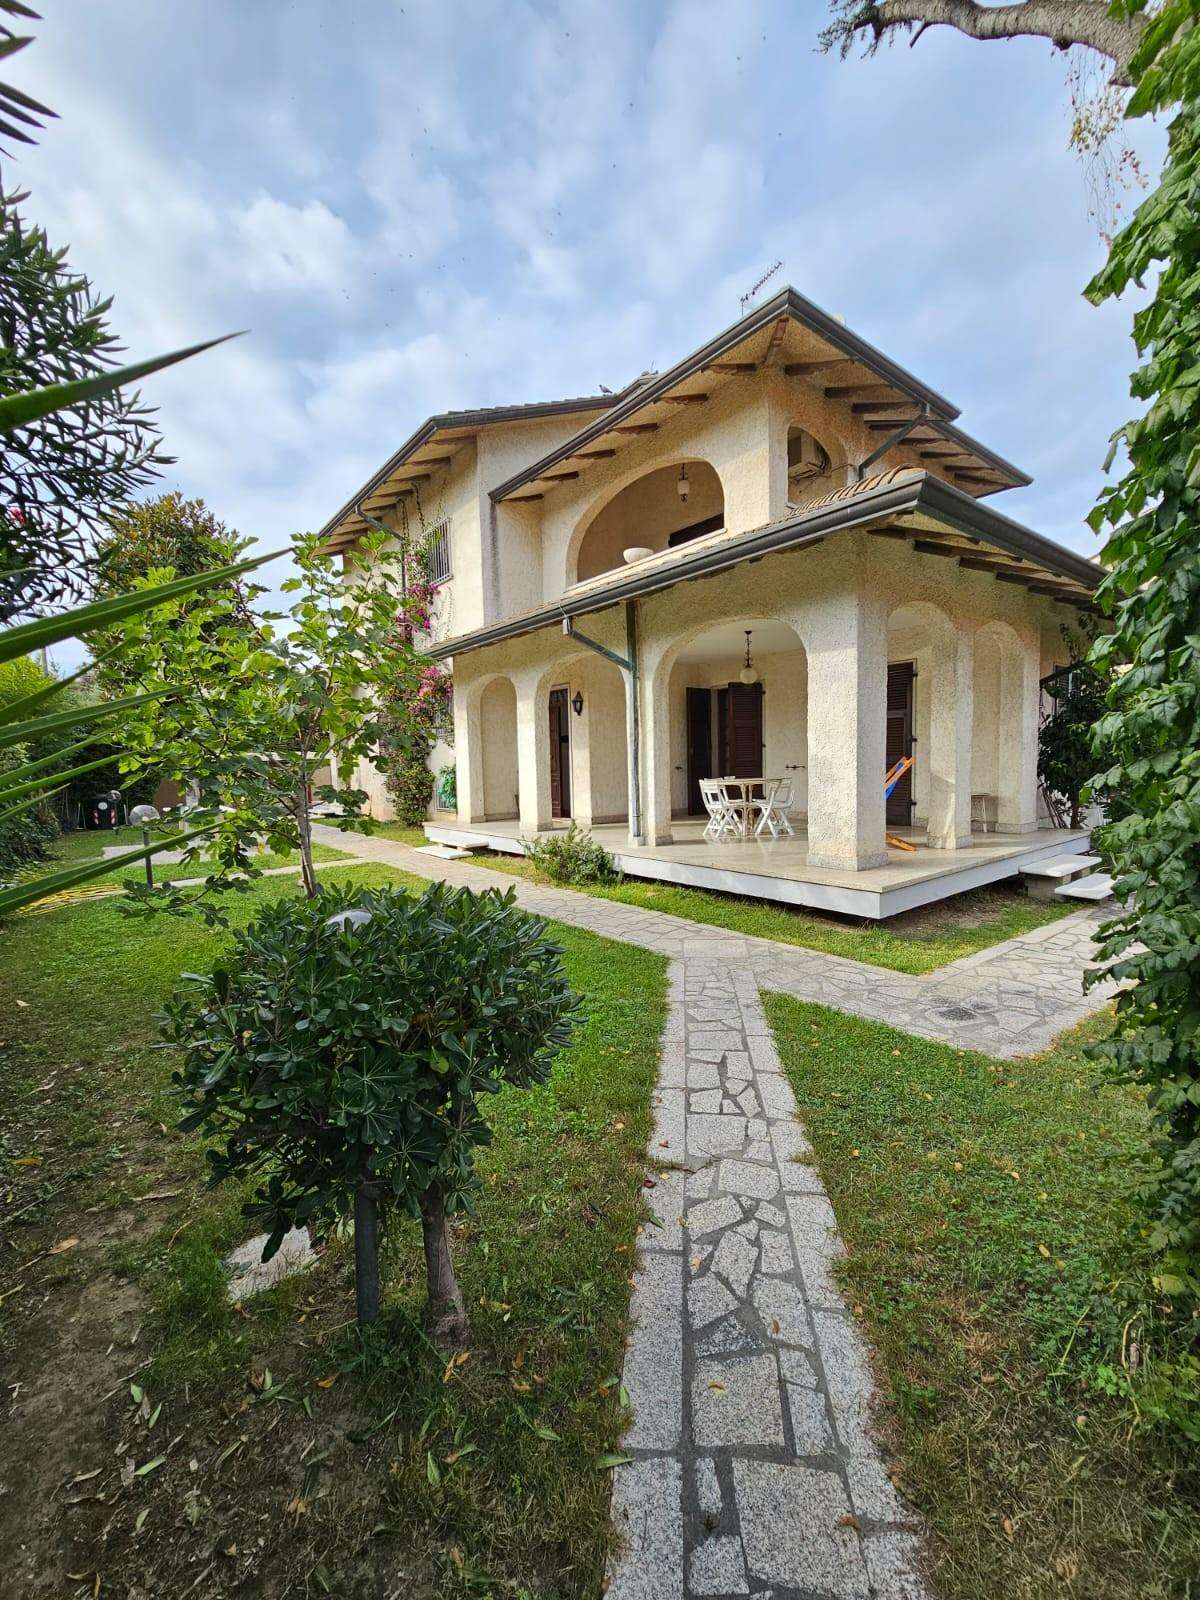 Casa Bi - Trifamiliare in Vendita a Carrara Via Tresana,